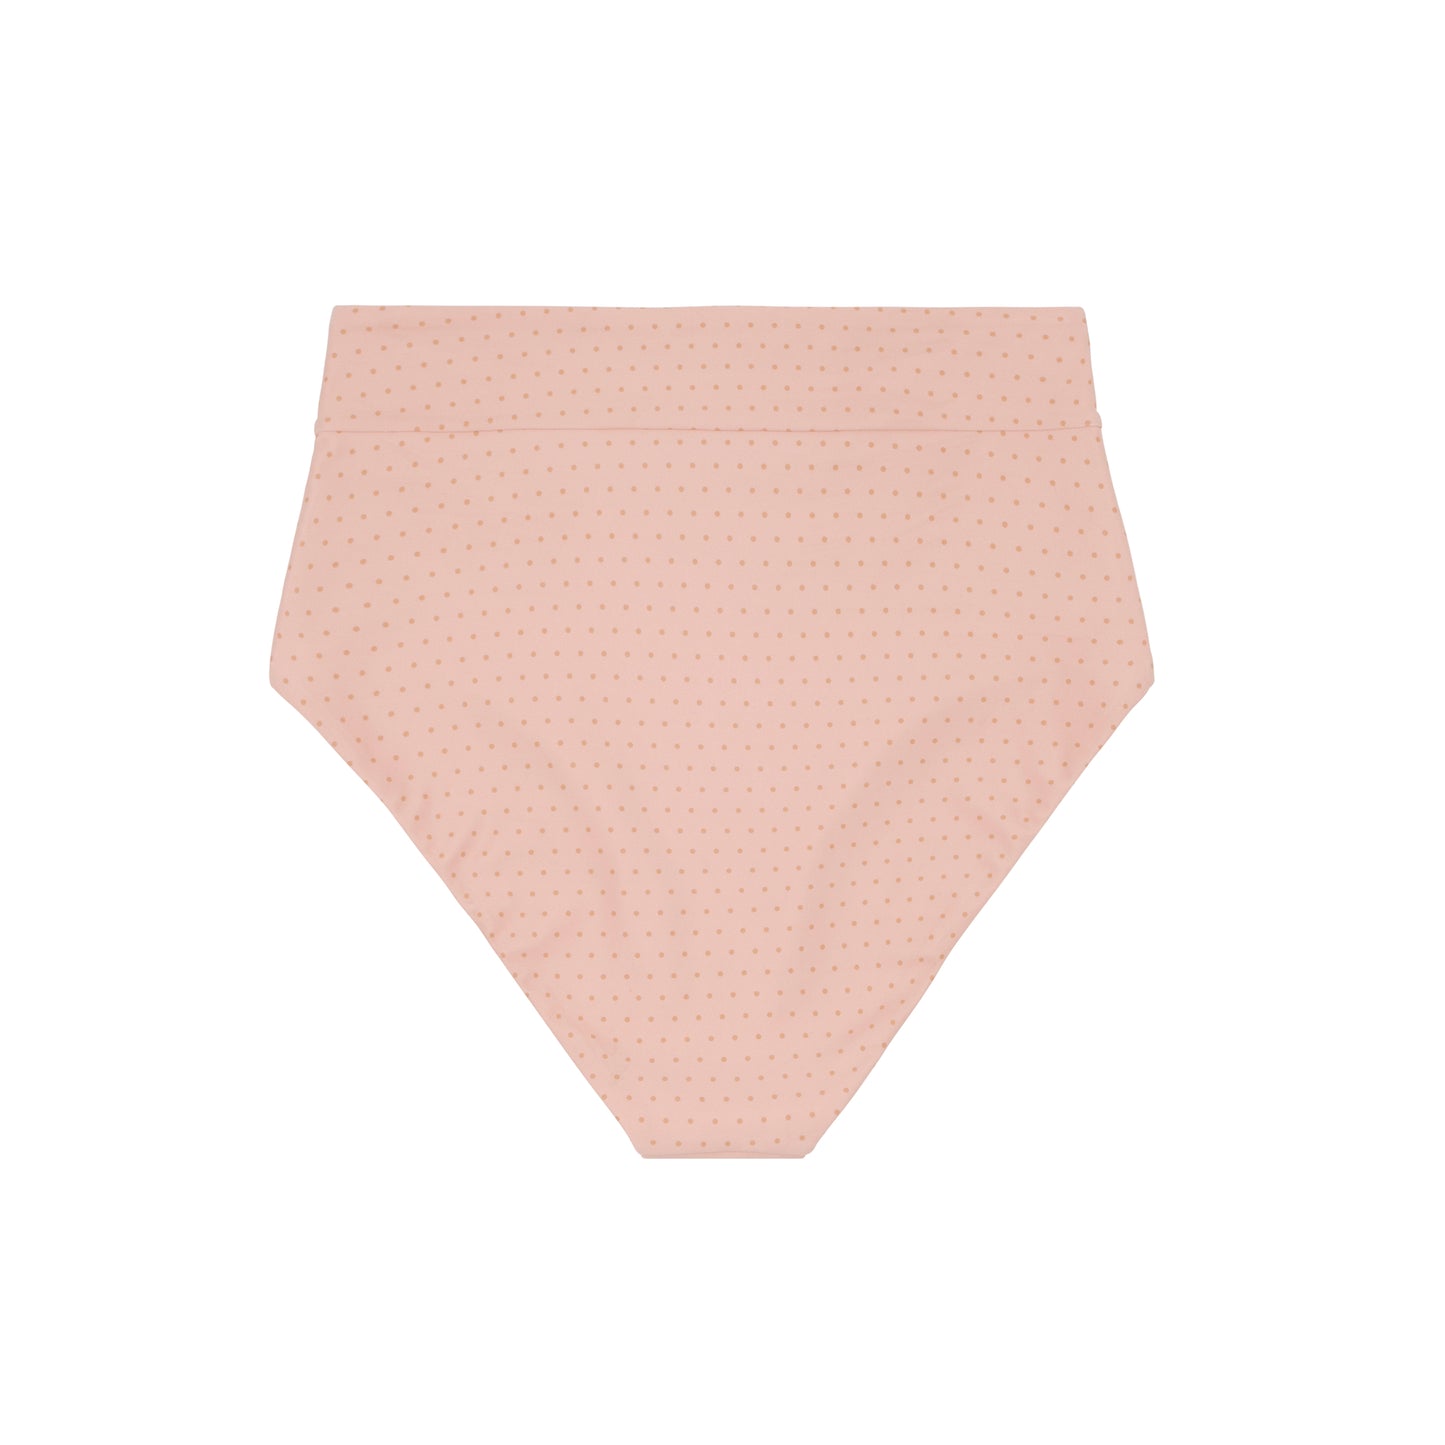 Swimwear- High Waisted Bikini Bottom